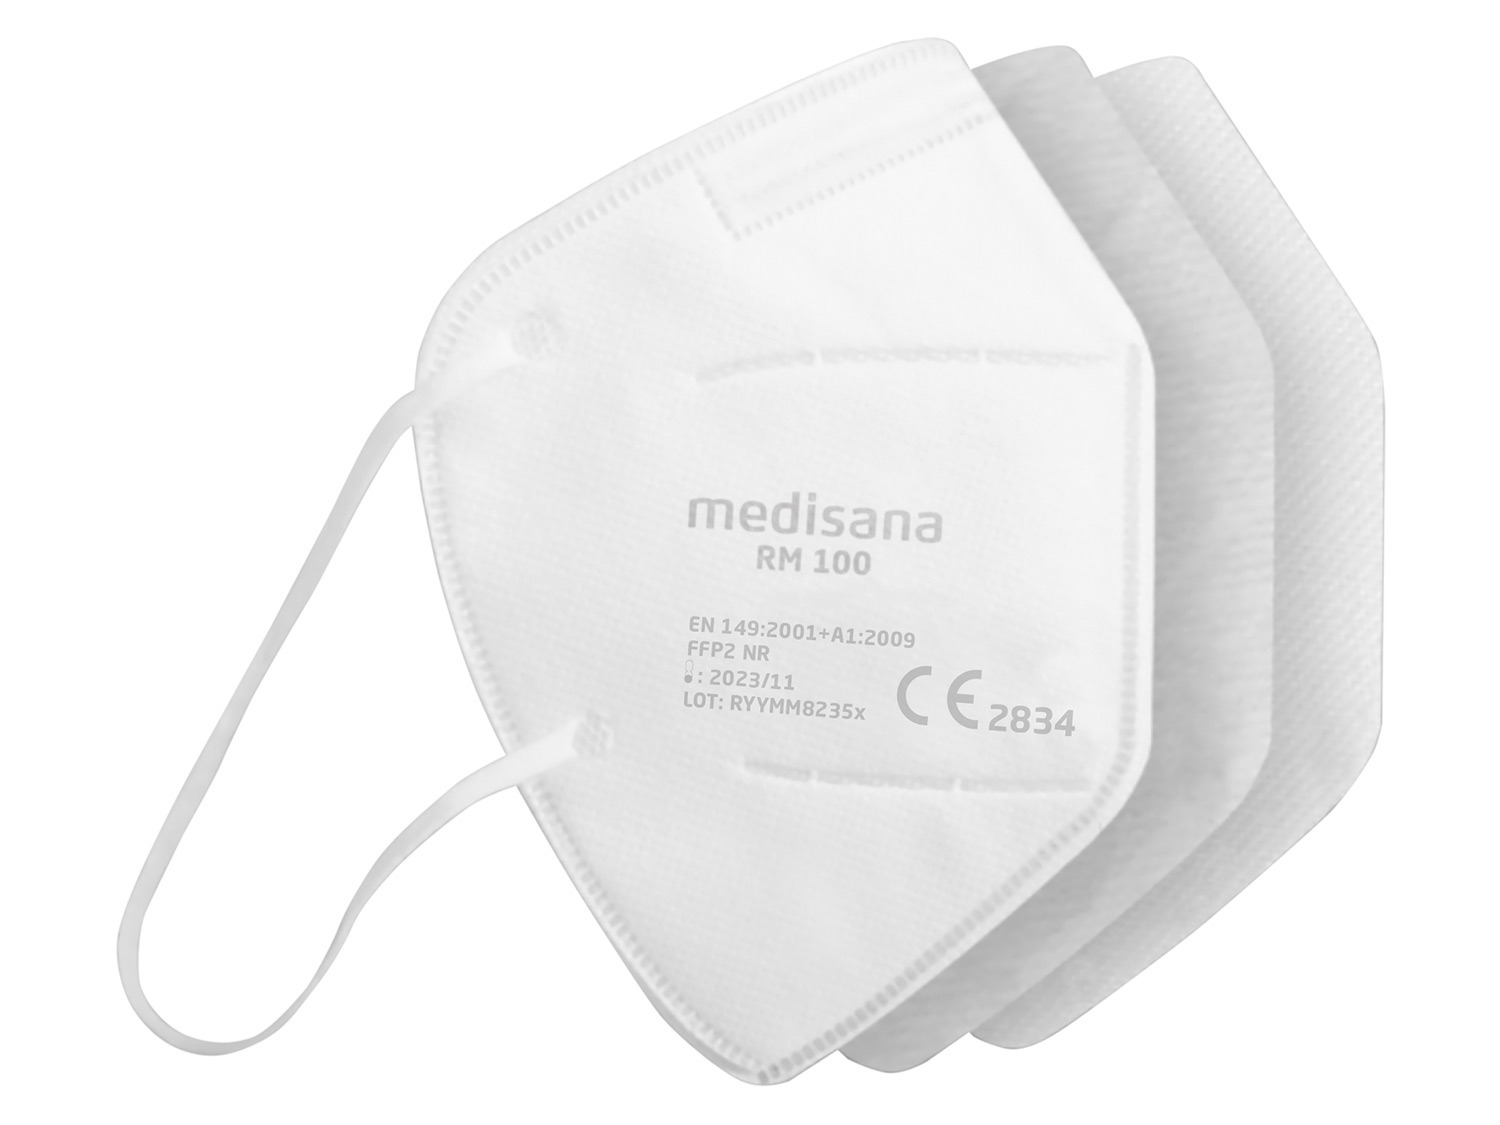 Atemschutzmasken RM 10pcs/set LIDL FFP2 100 | MEDISANA